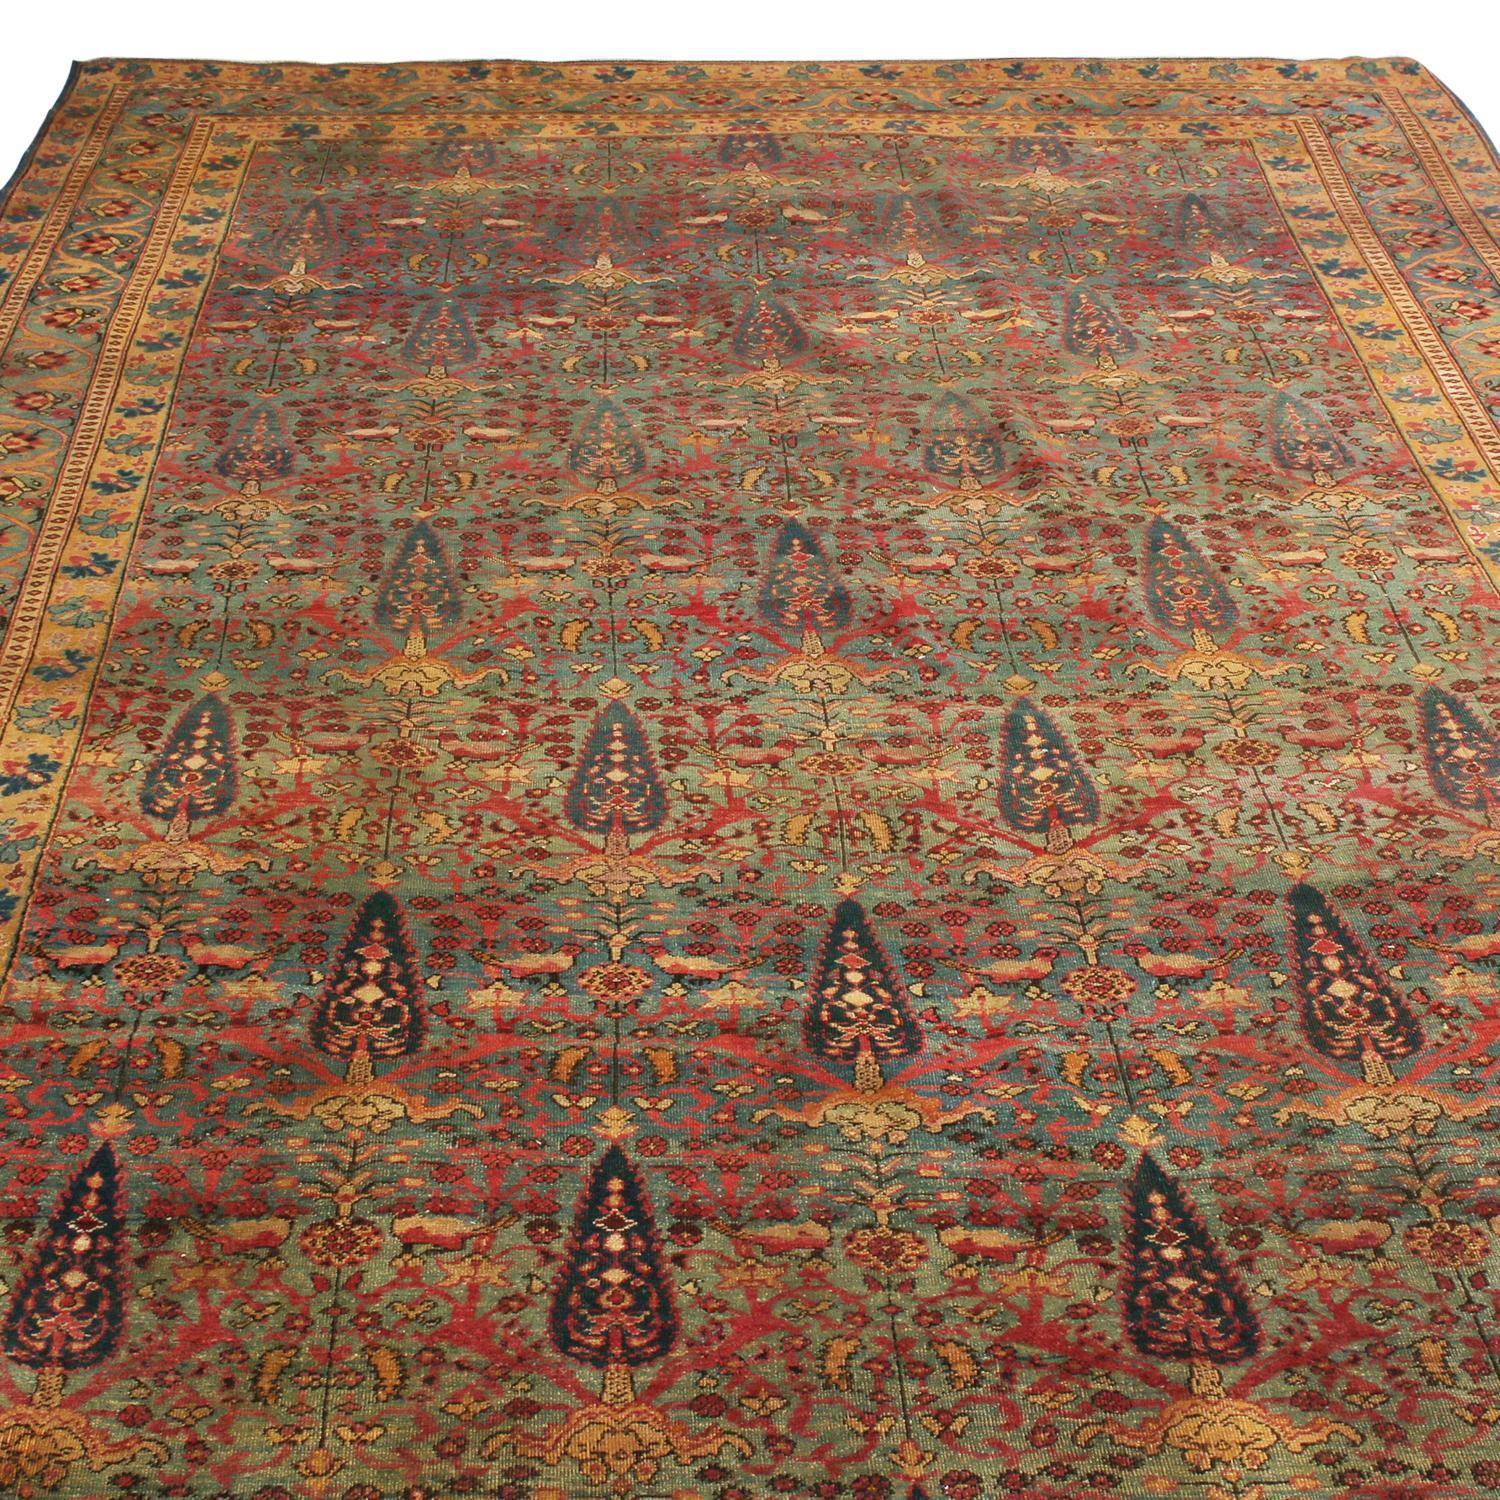 Originaire de Perse entre 1890-1900, ce tapis persan antique Kerman Lavar est issu d'une famille distinguée, fabriquée dans l'une des provinces les plus réputées pour la fabrication de tapis. Le champ présente un motif persan autrefois acclamé